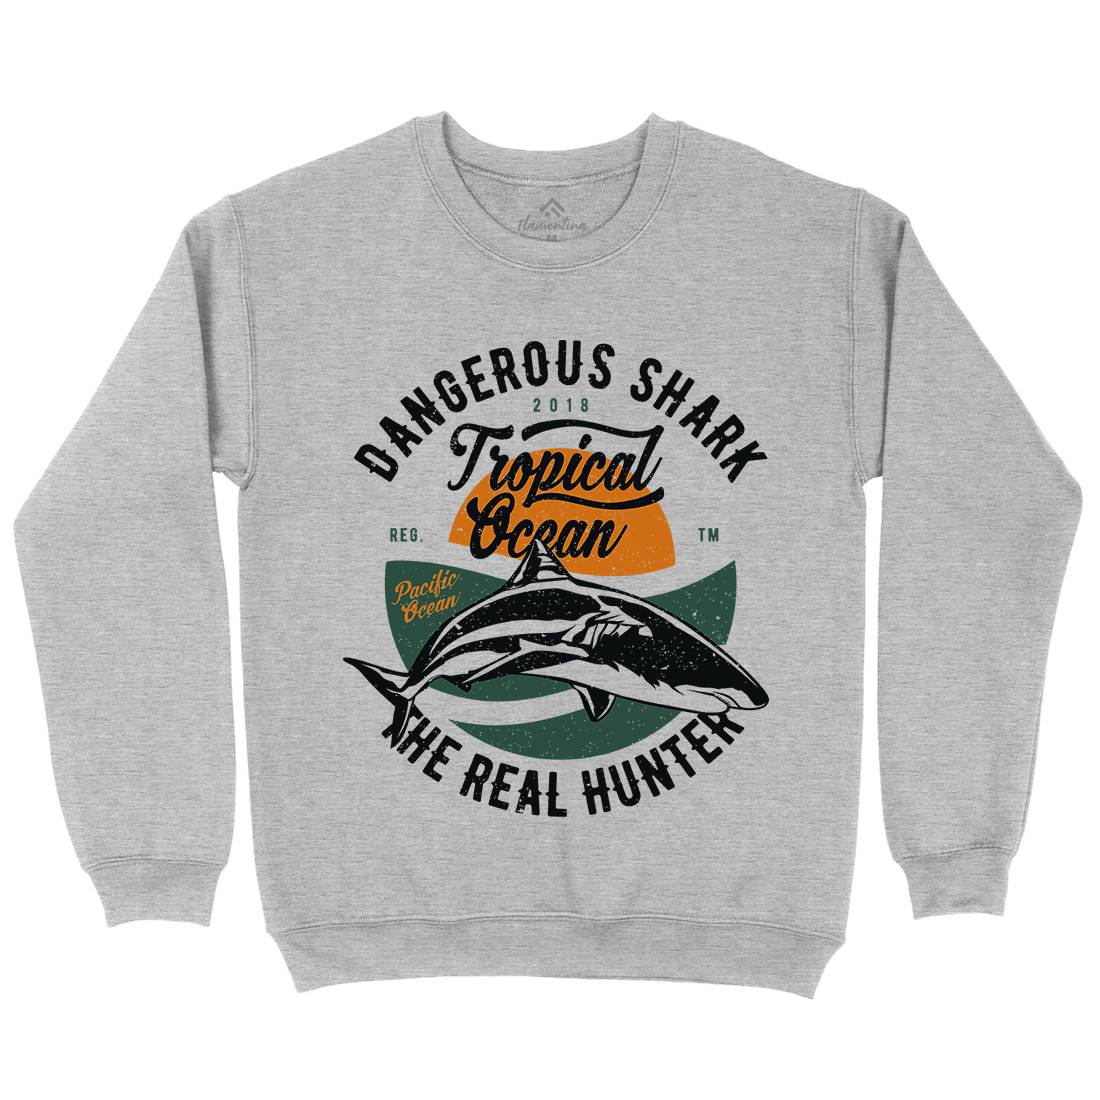 Dangerous Shark Mens Crew Neck Sweatshirt Navy A643